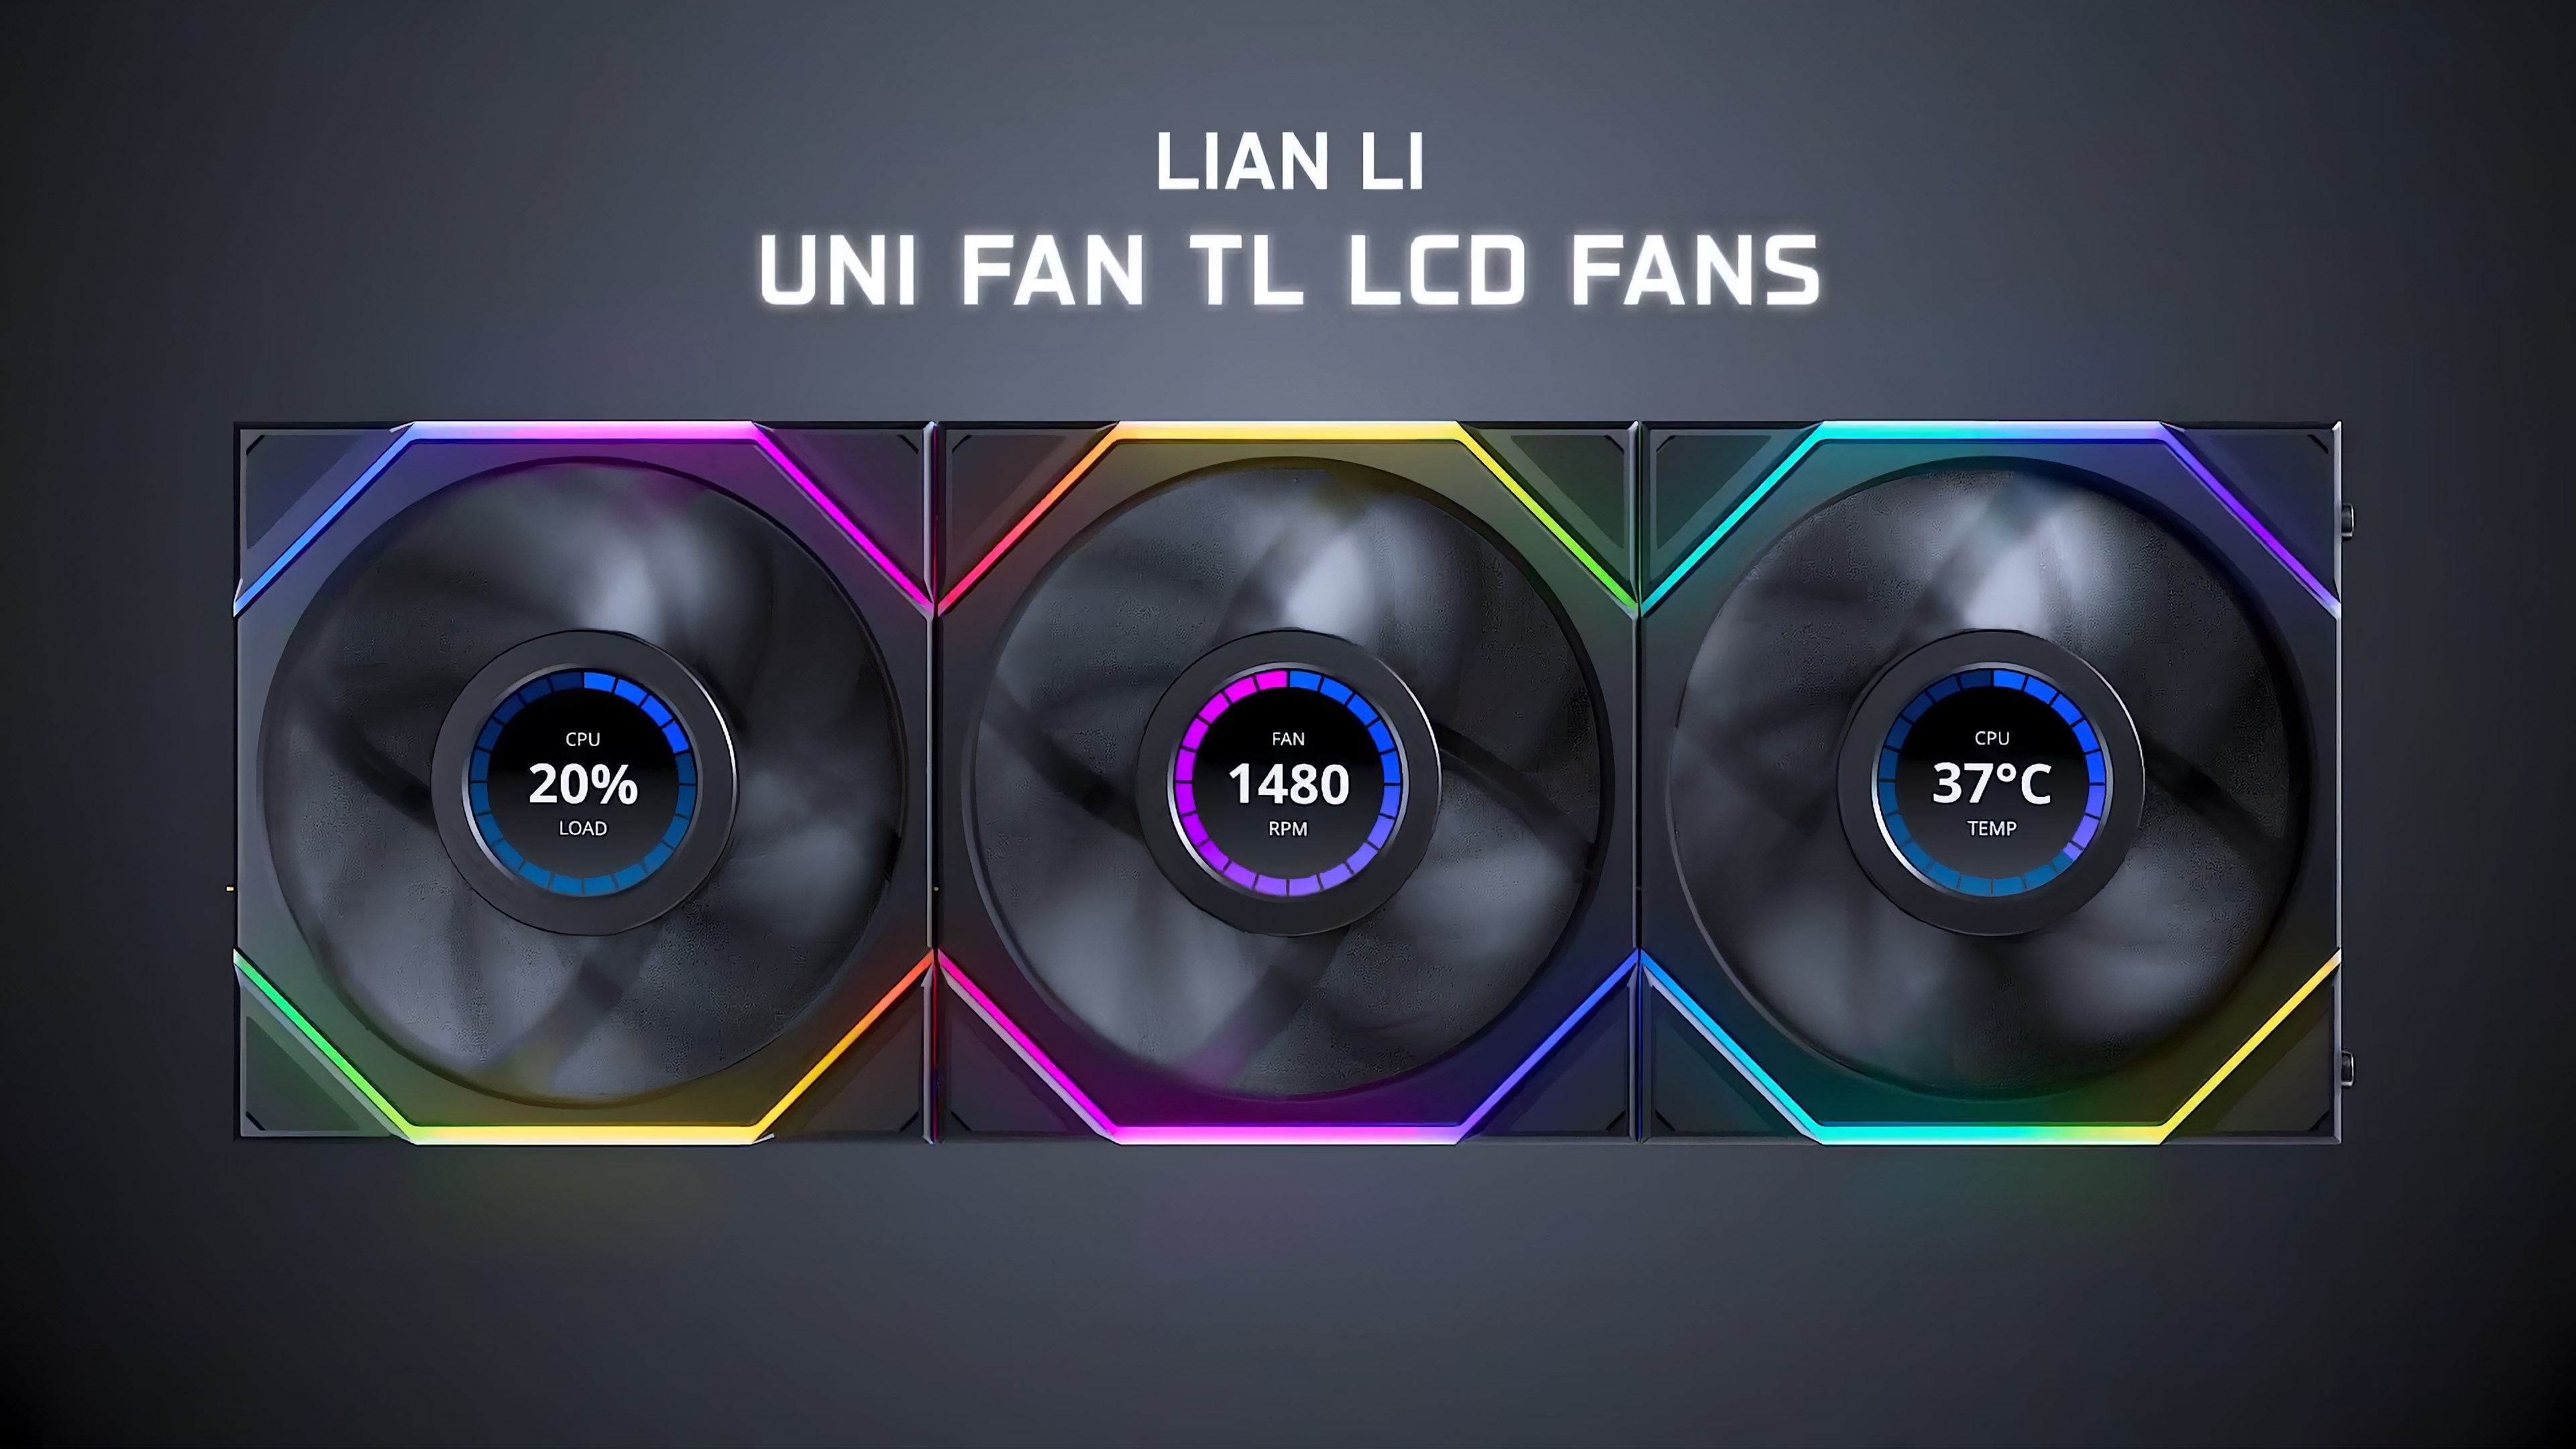 Lian Li UNI FAN TL özellikleri ve fiyatı